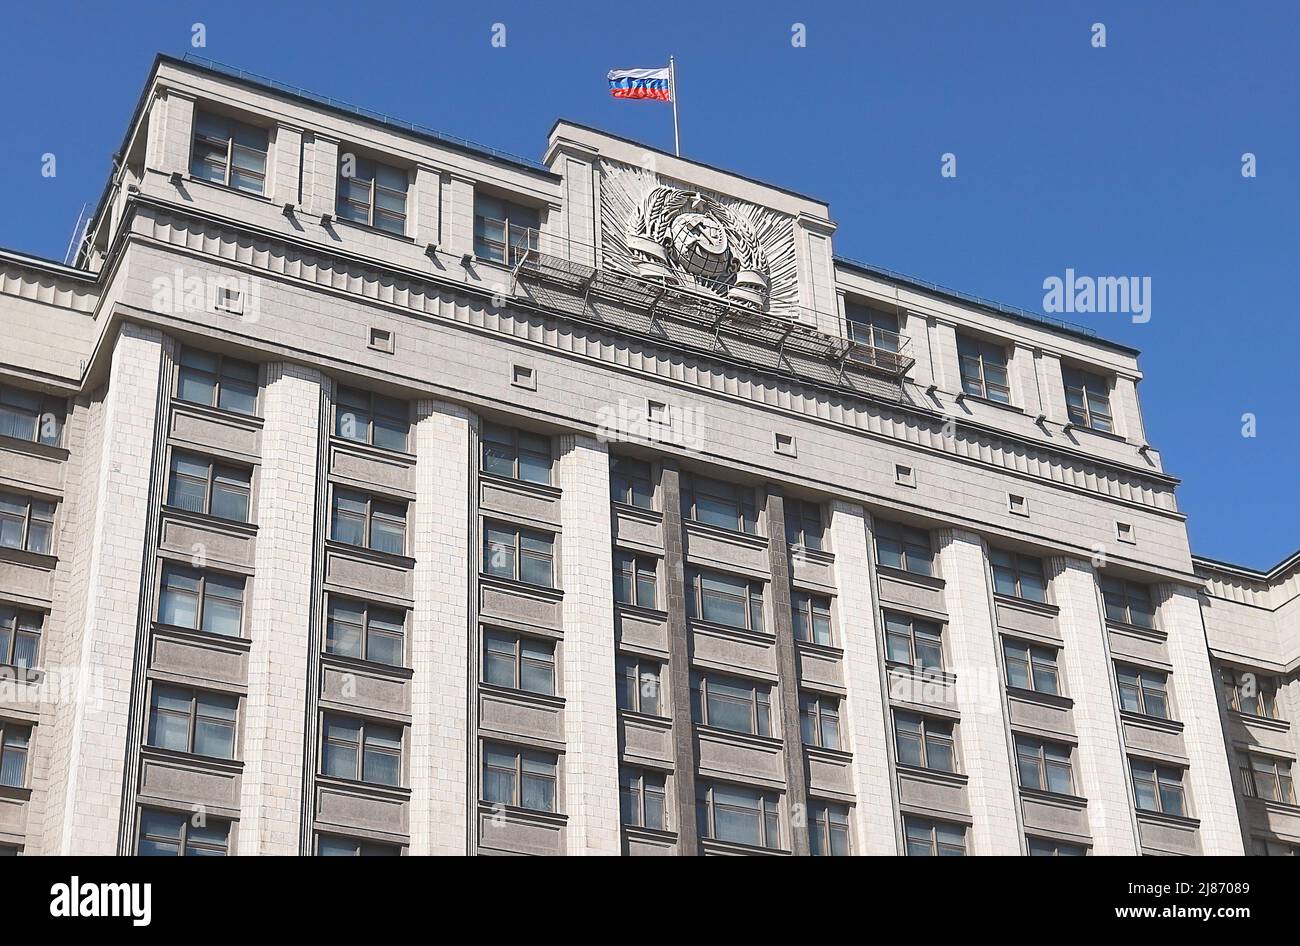 Mosca: Edificio esterno della Duma di Stato della Federazione Russa comunemente abbreviato in russo come Gosduma, Assemblea federale della Russia Foto Stock